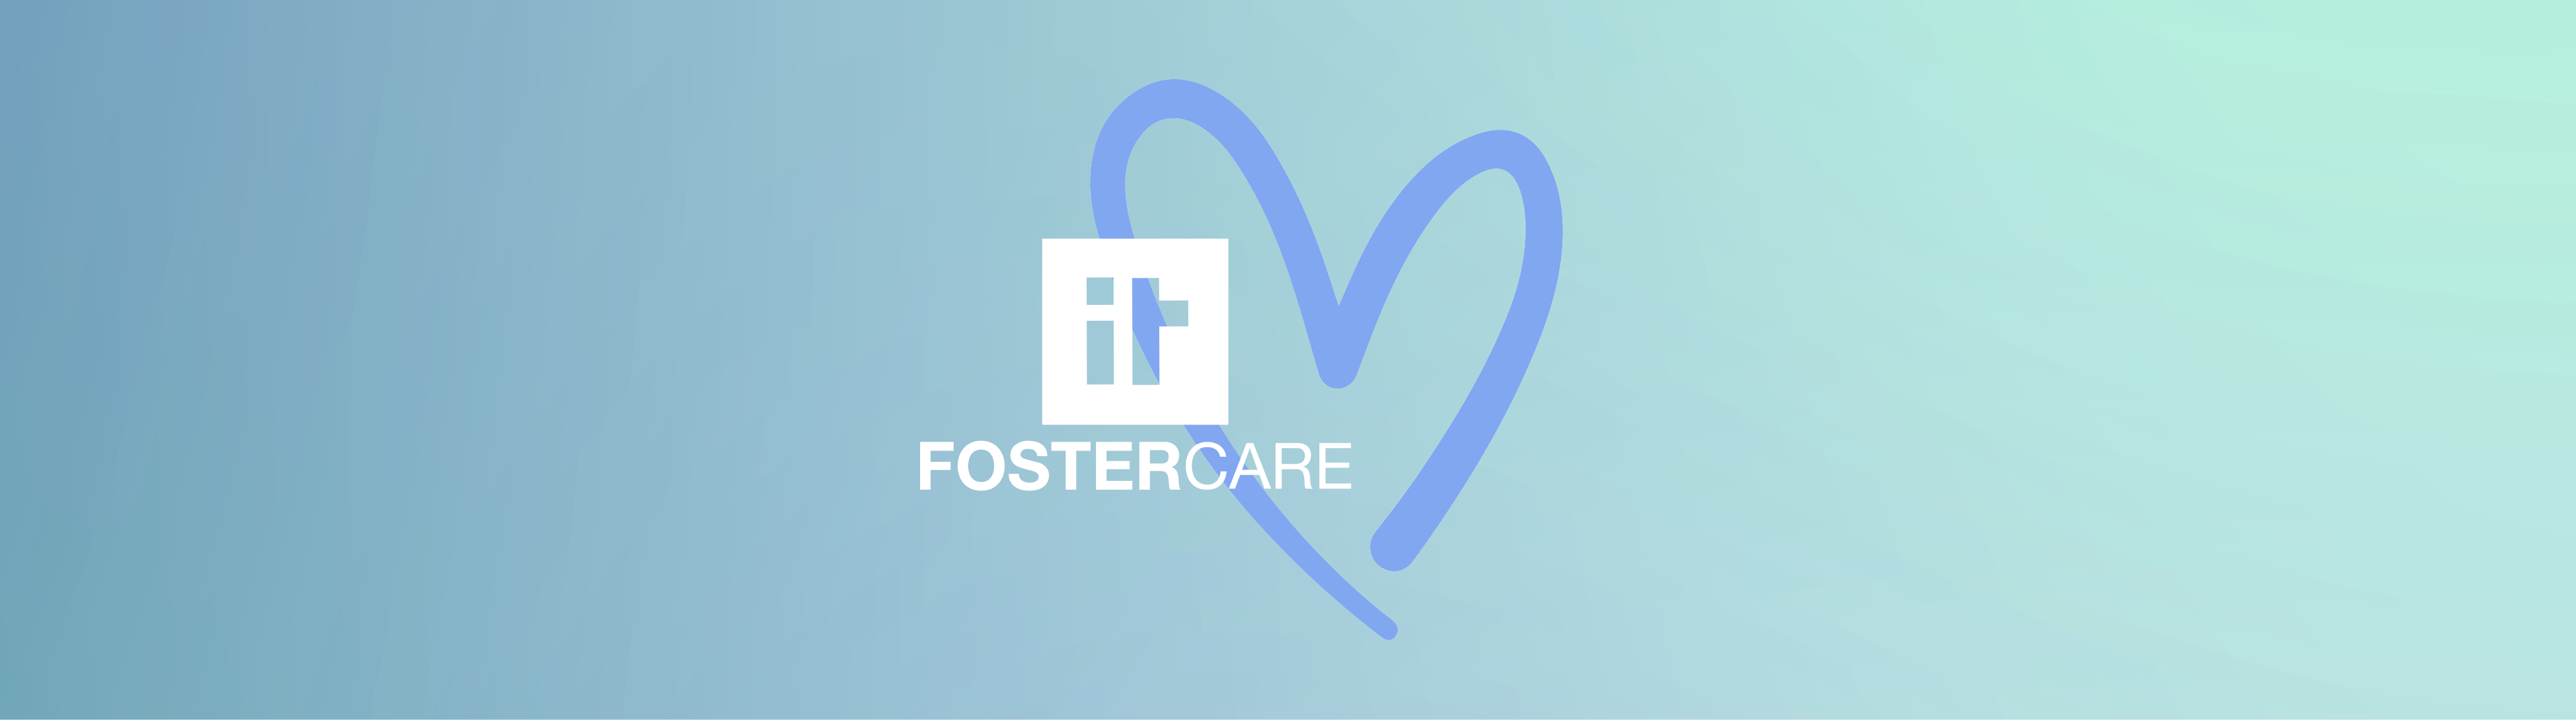 Email-Header-Foster-Care-V2.png